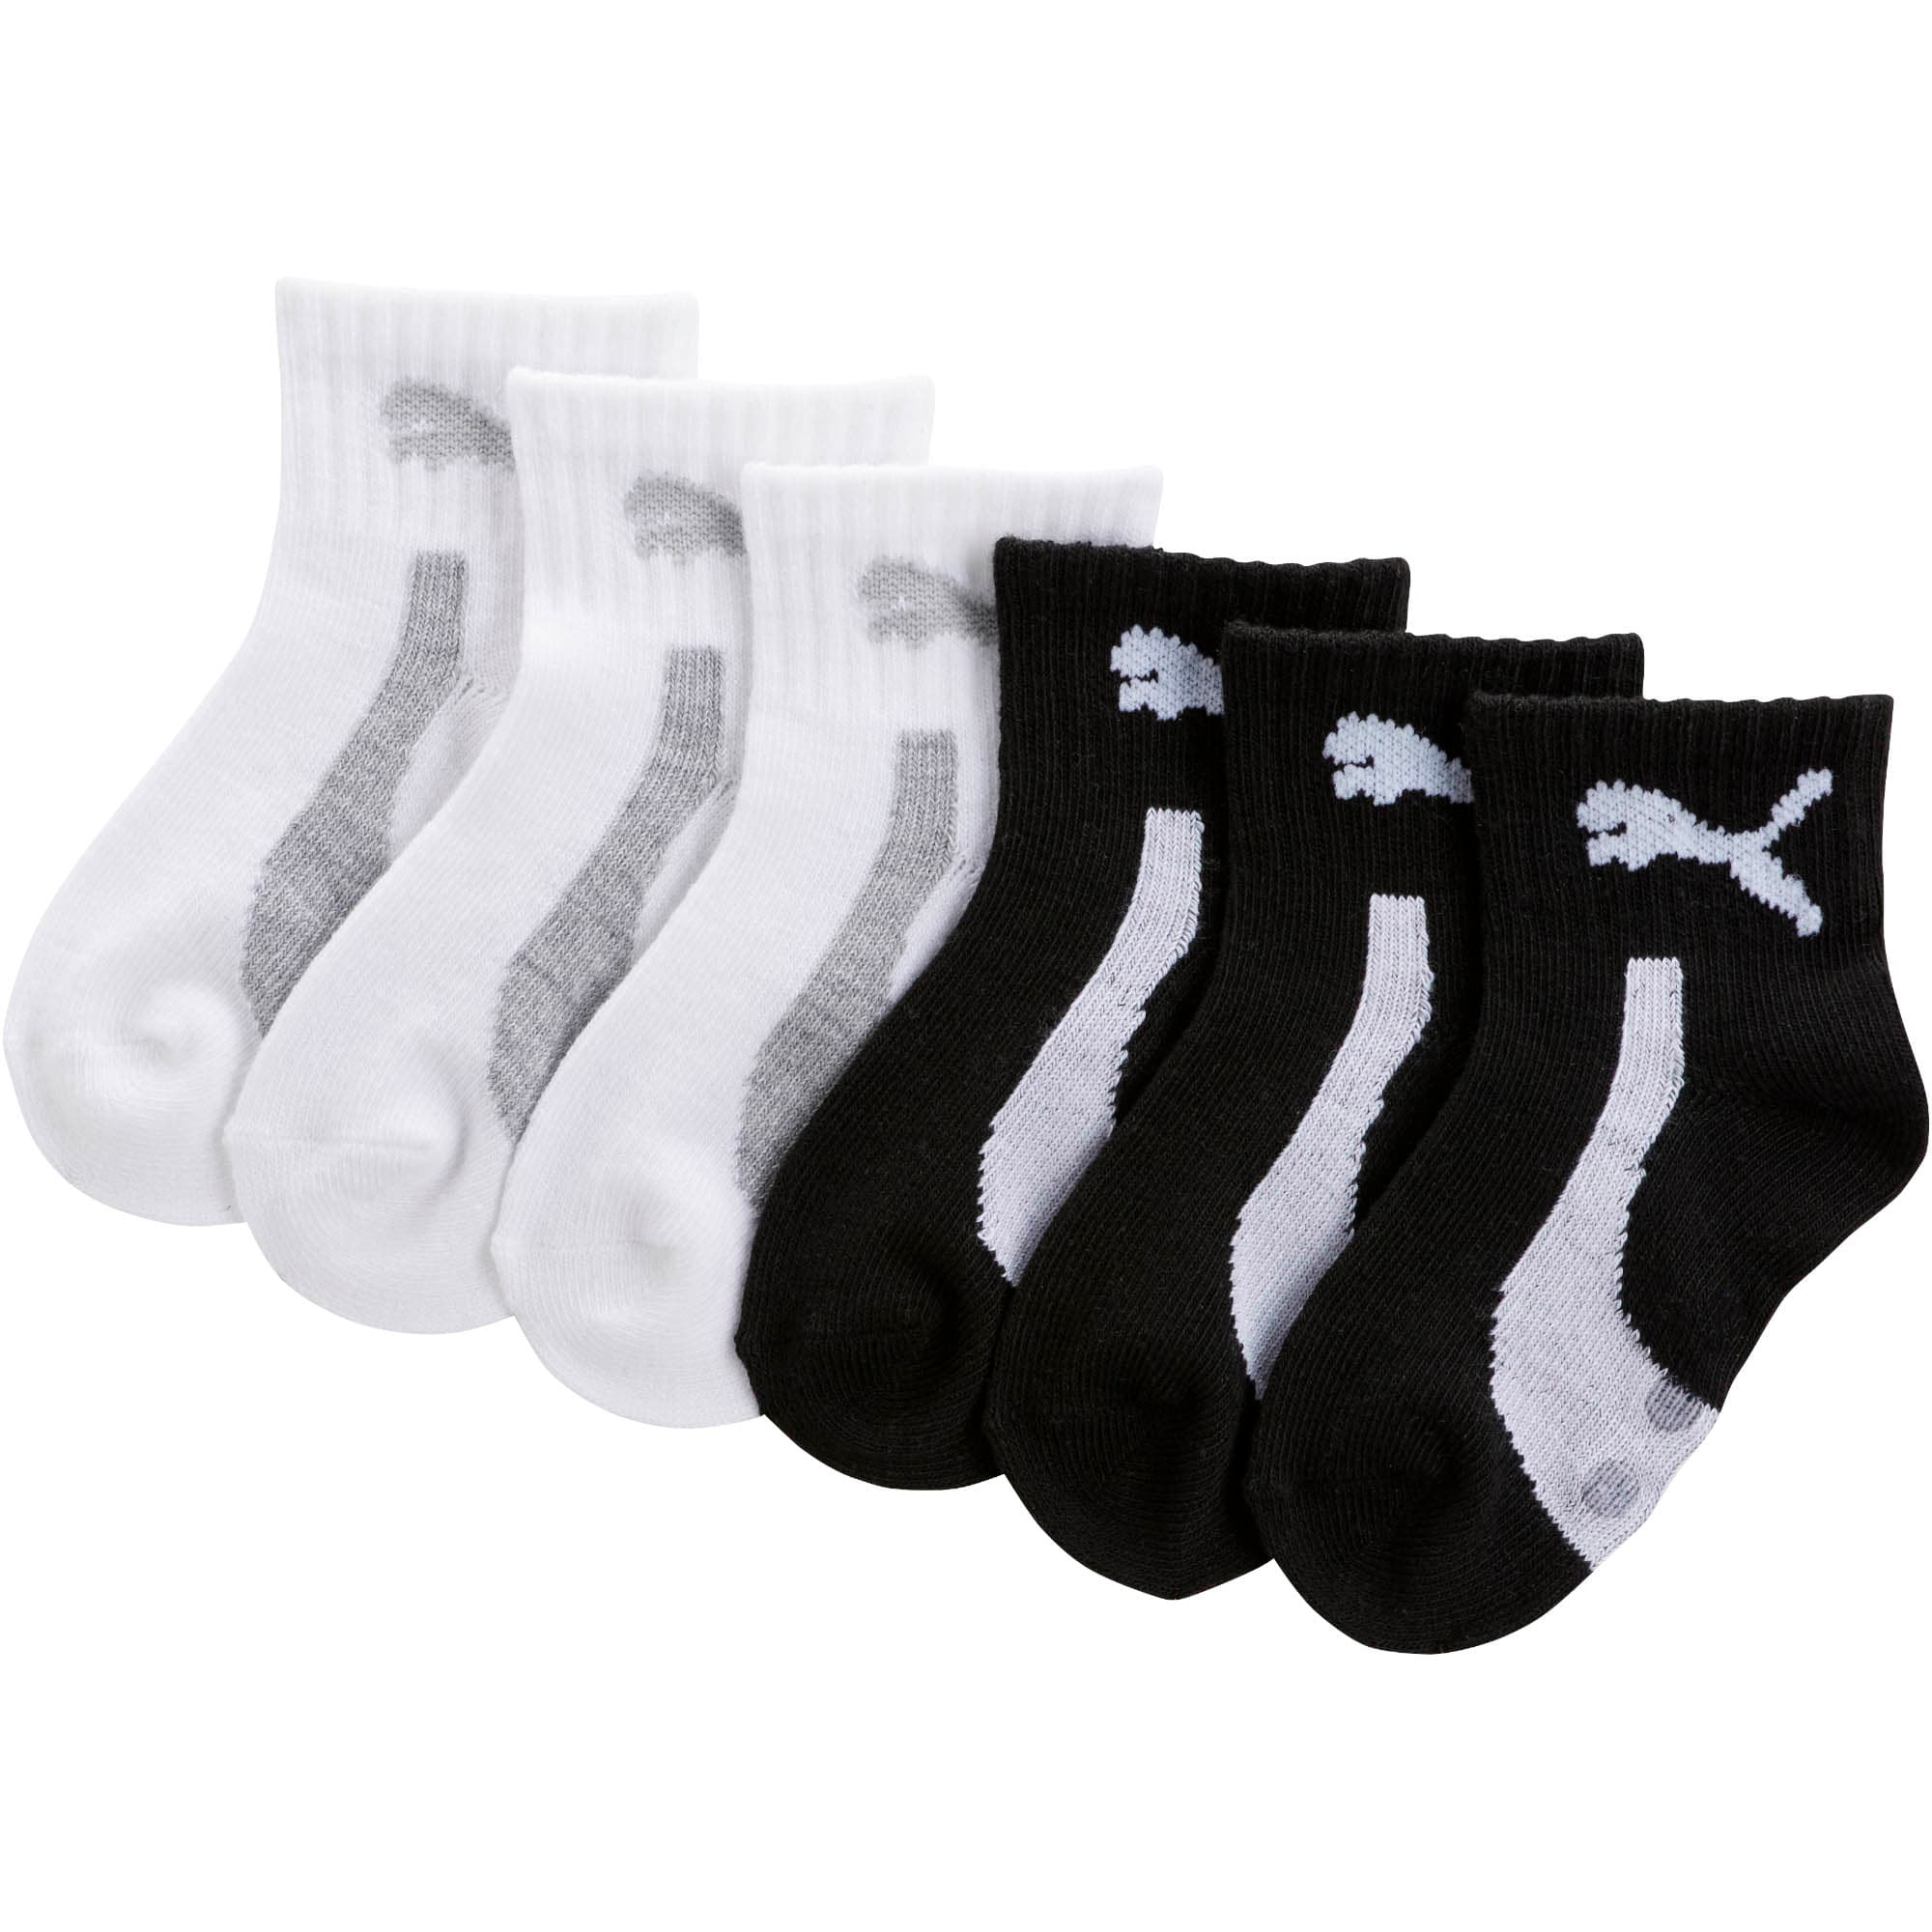 Infant Unisex Quarter Crew Socks (6 Pack)